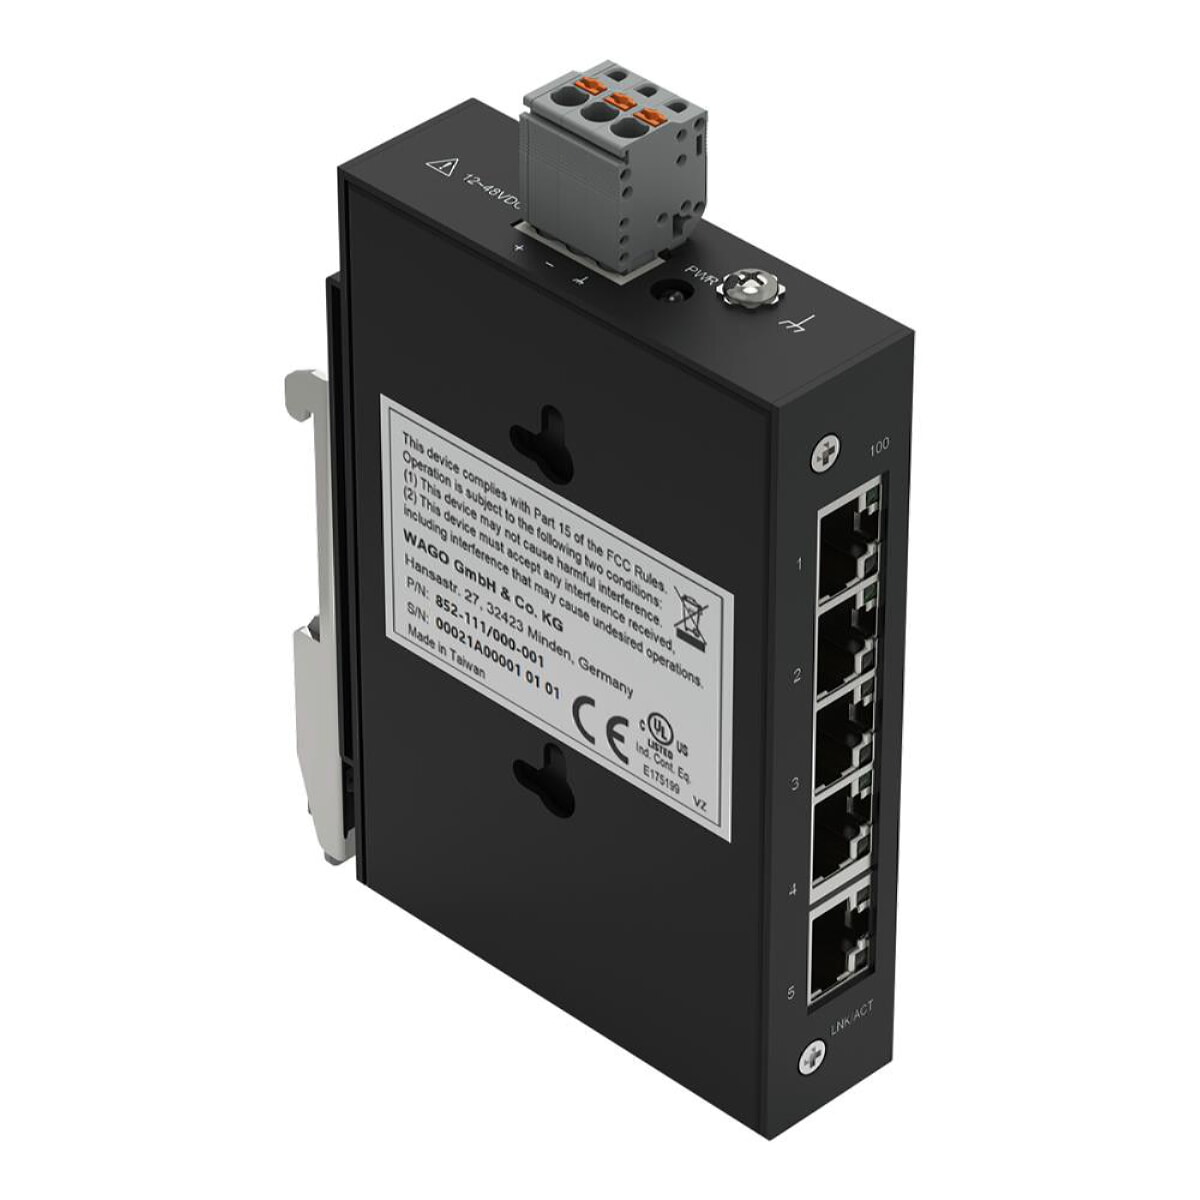 WAGO Industrial-ECO-Switch 5 Ports 100Base-TX schwarz 852-111/000-001